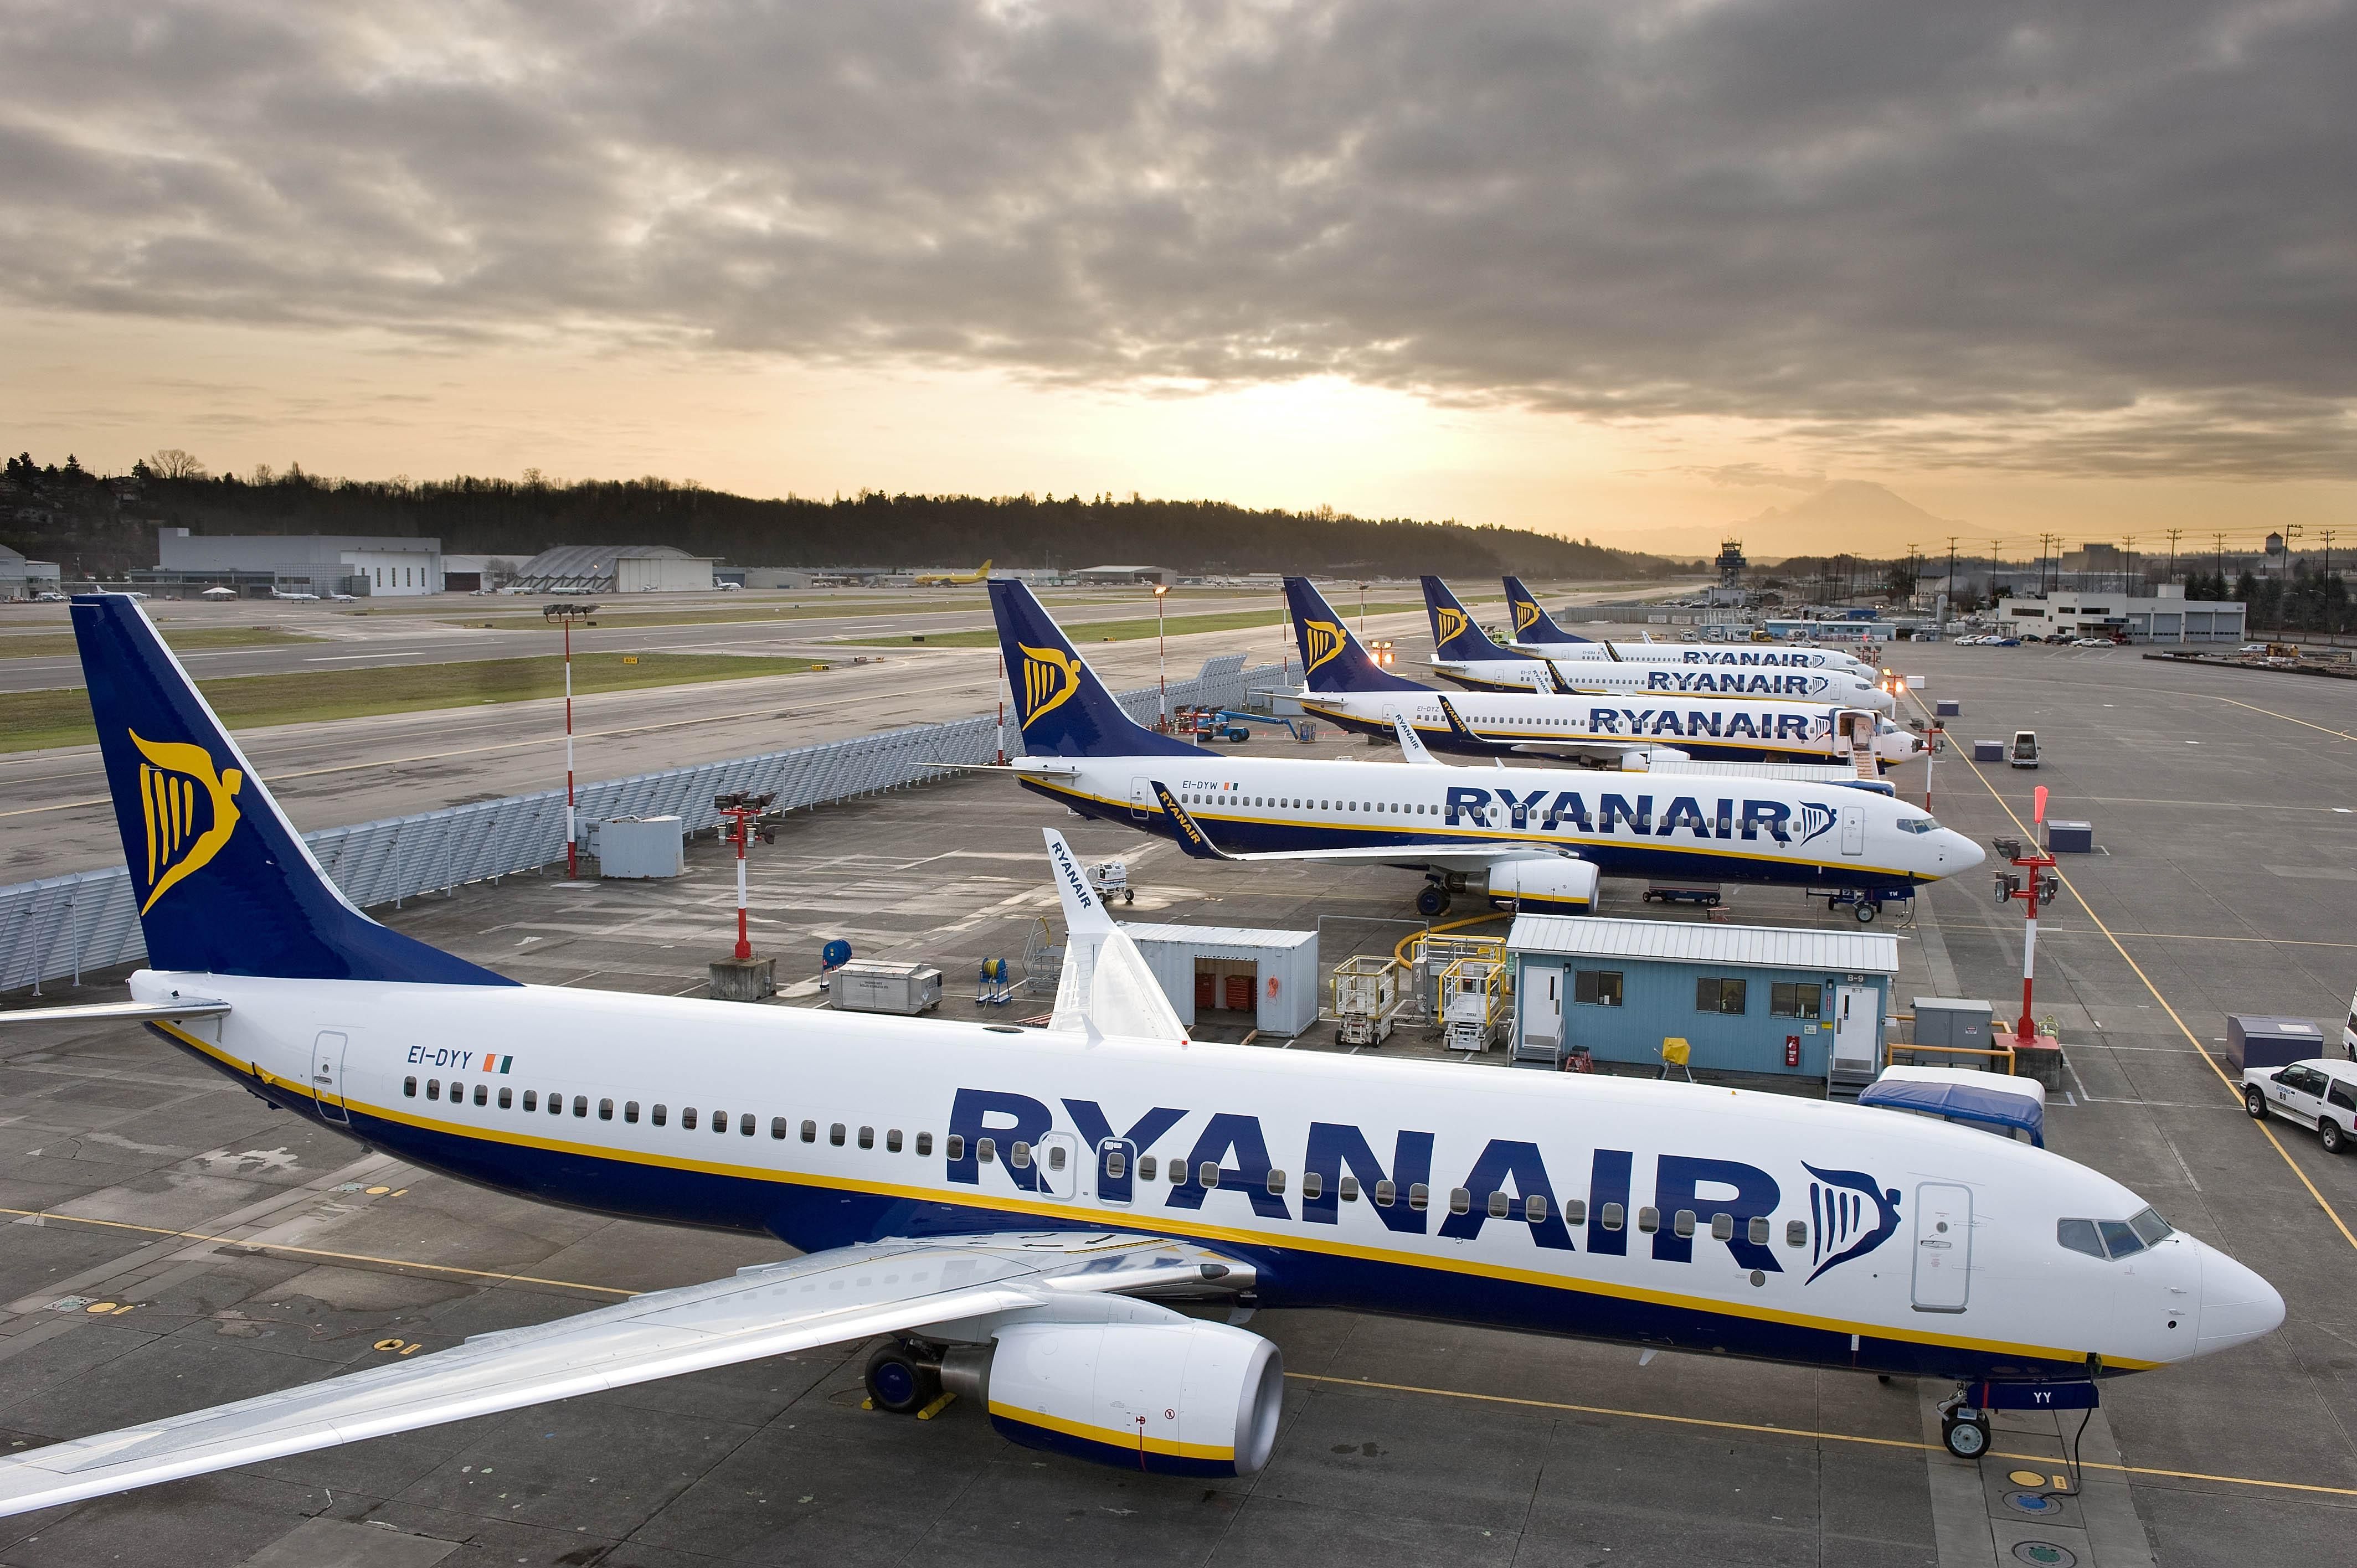 Il Governo italiano aumenta le tasse aeroportuali e Ryanair risponde chiudendo 2 basi, eliminando 16 rotte e tagliando 600 posti di lavoro